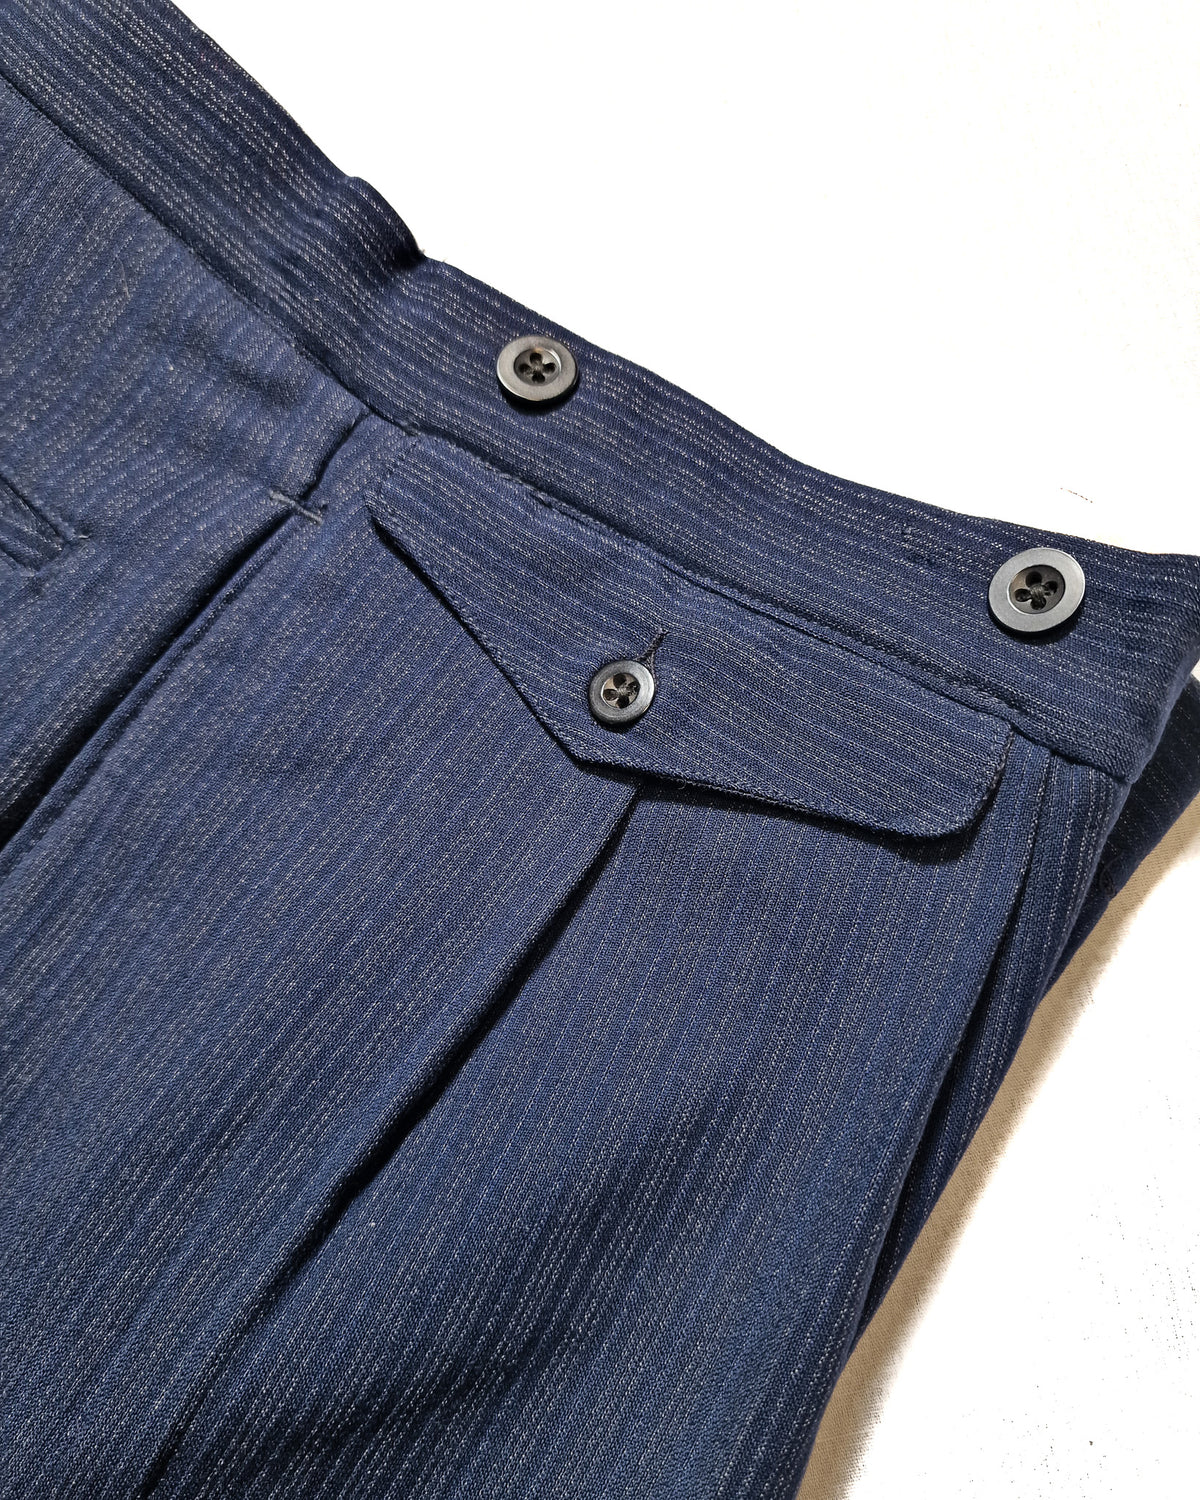 1930s British Multistripe Suit Trousers Size 40 SL44